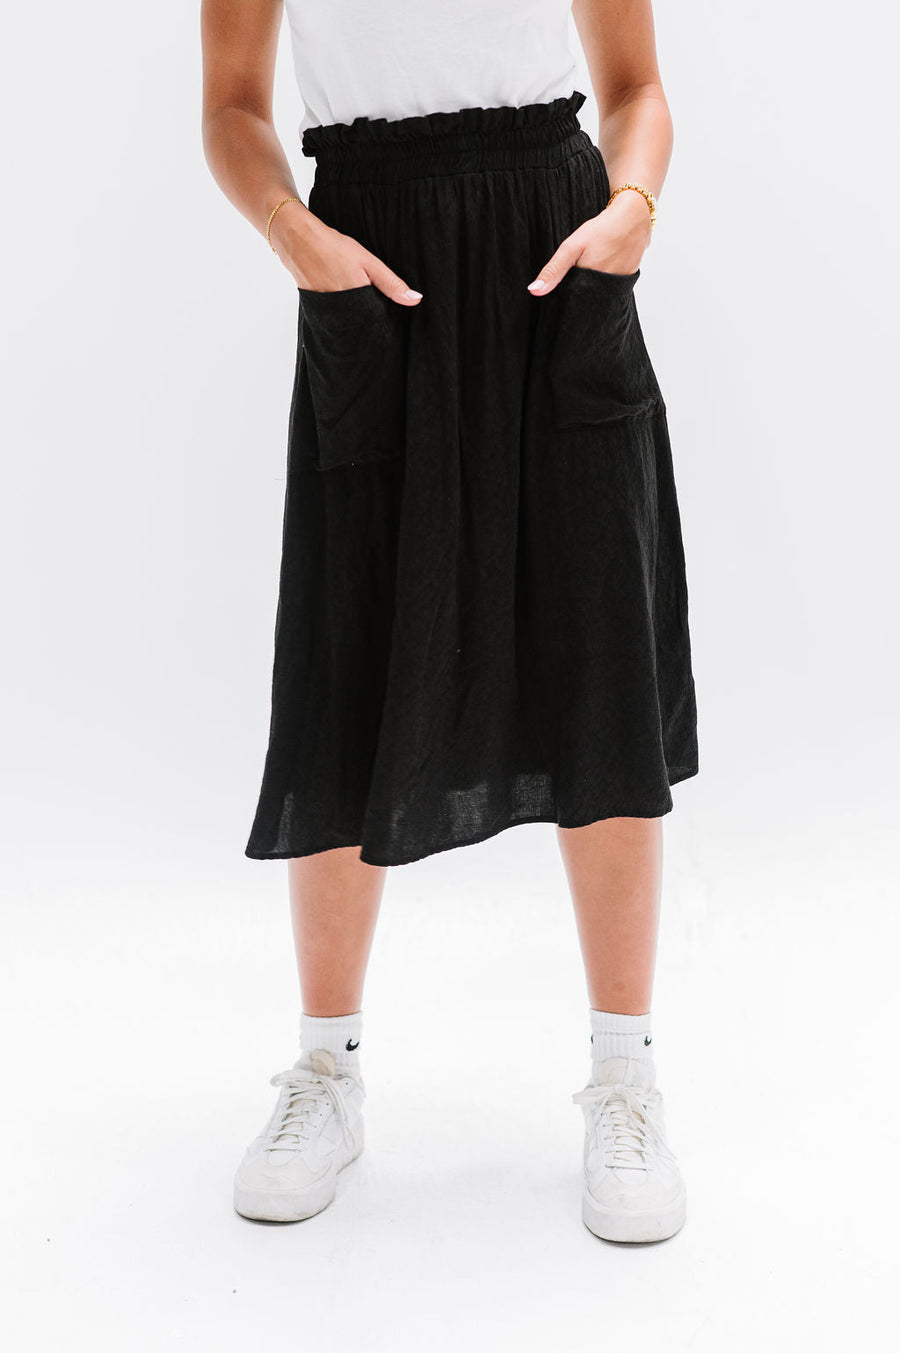 Jael Skirt in Black